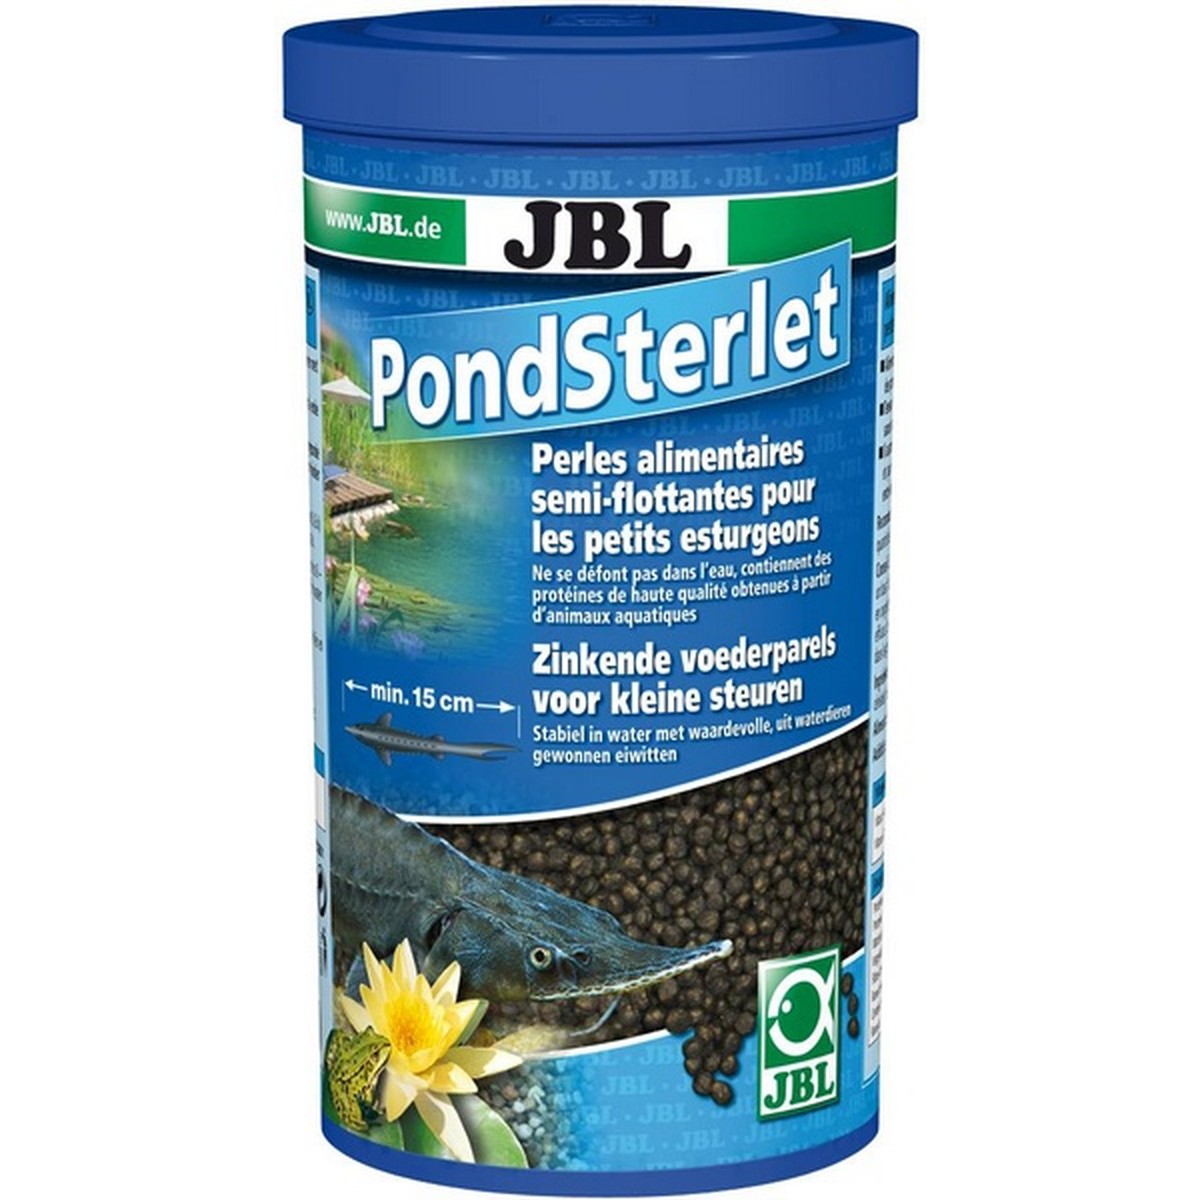   JBL Pond Sterlet. 1 l  F/NL  1l